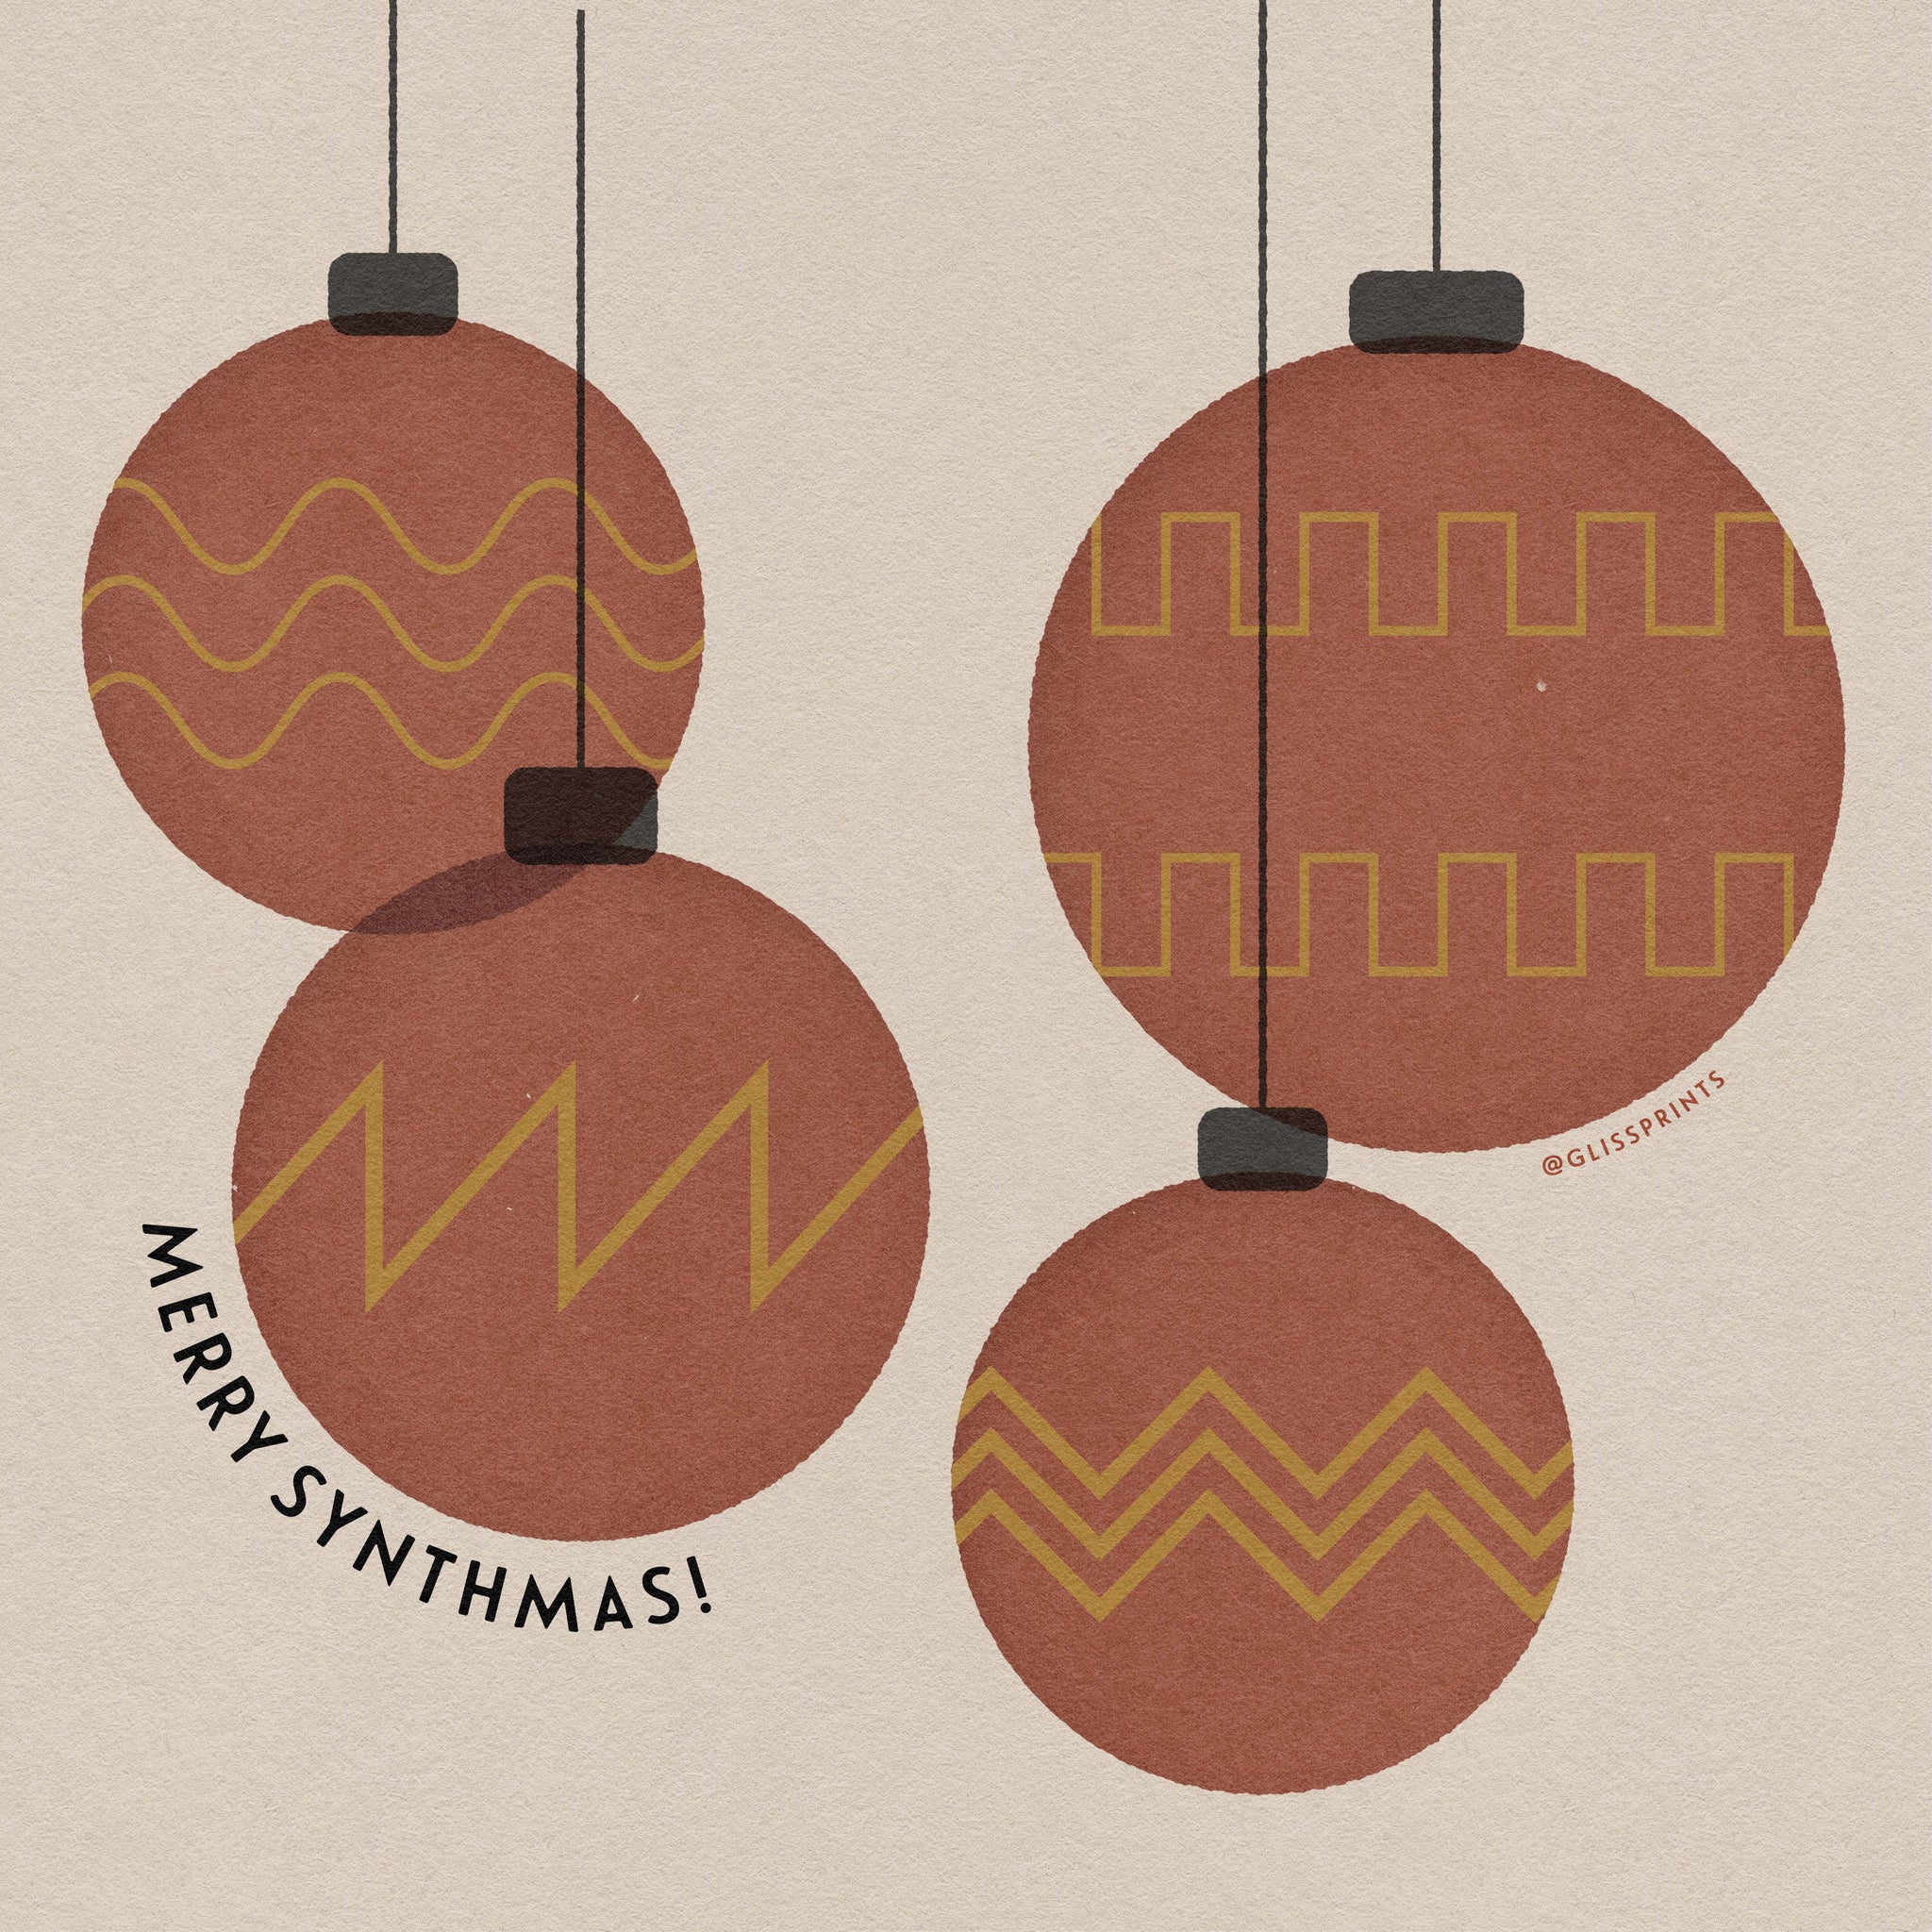 Happy holidays! Merry synthmas!